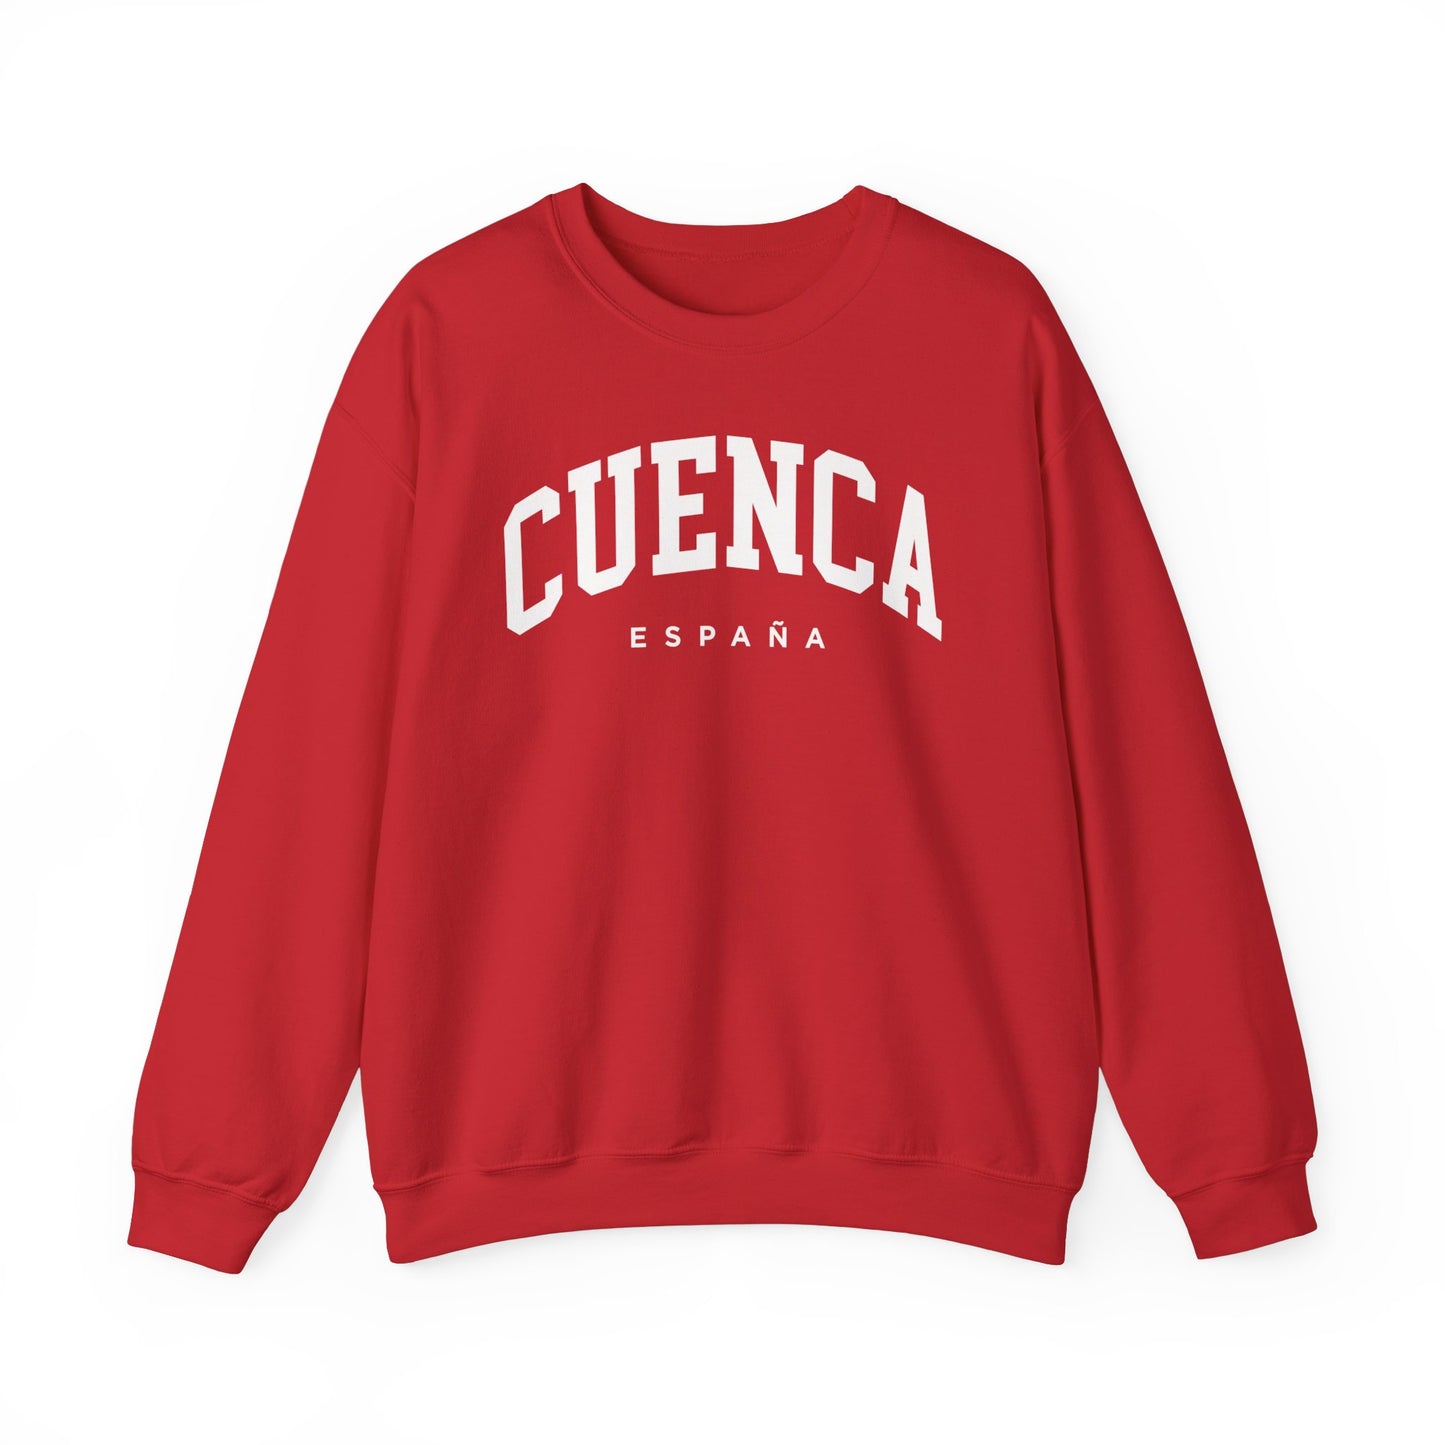 Cuenca Spain Sweatshirt